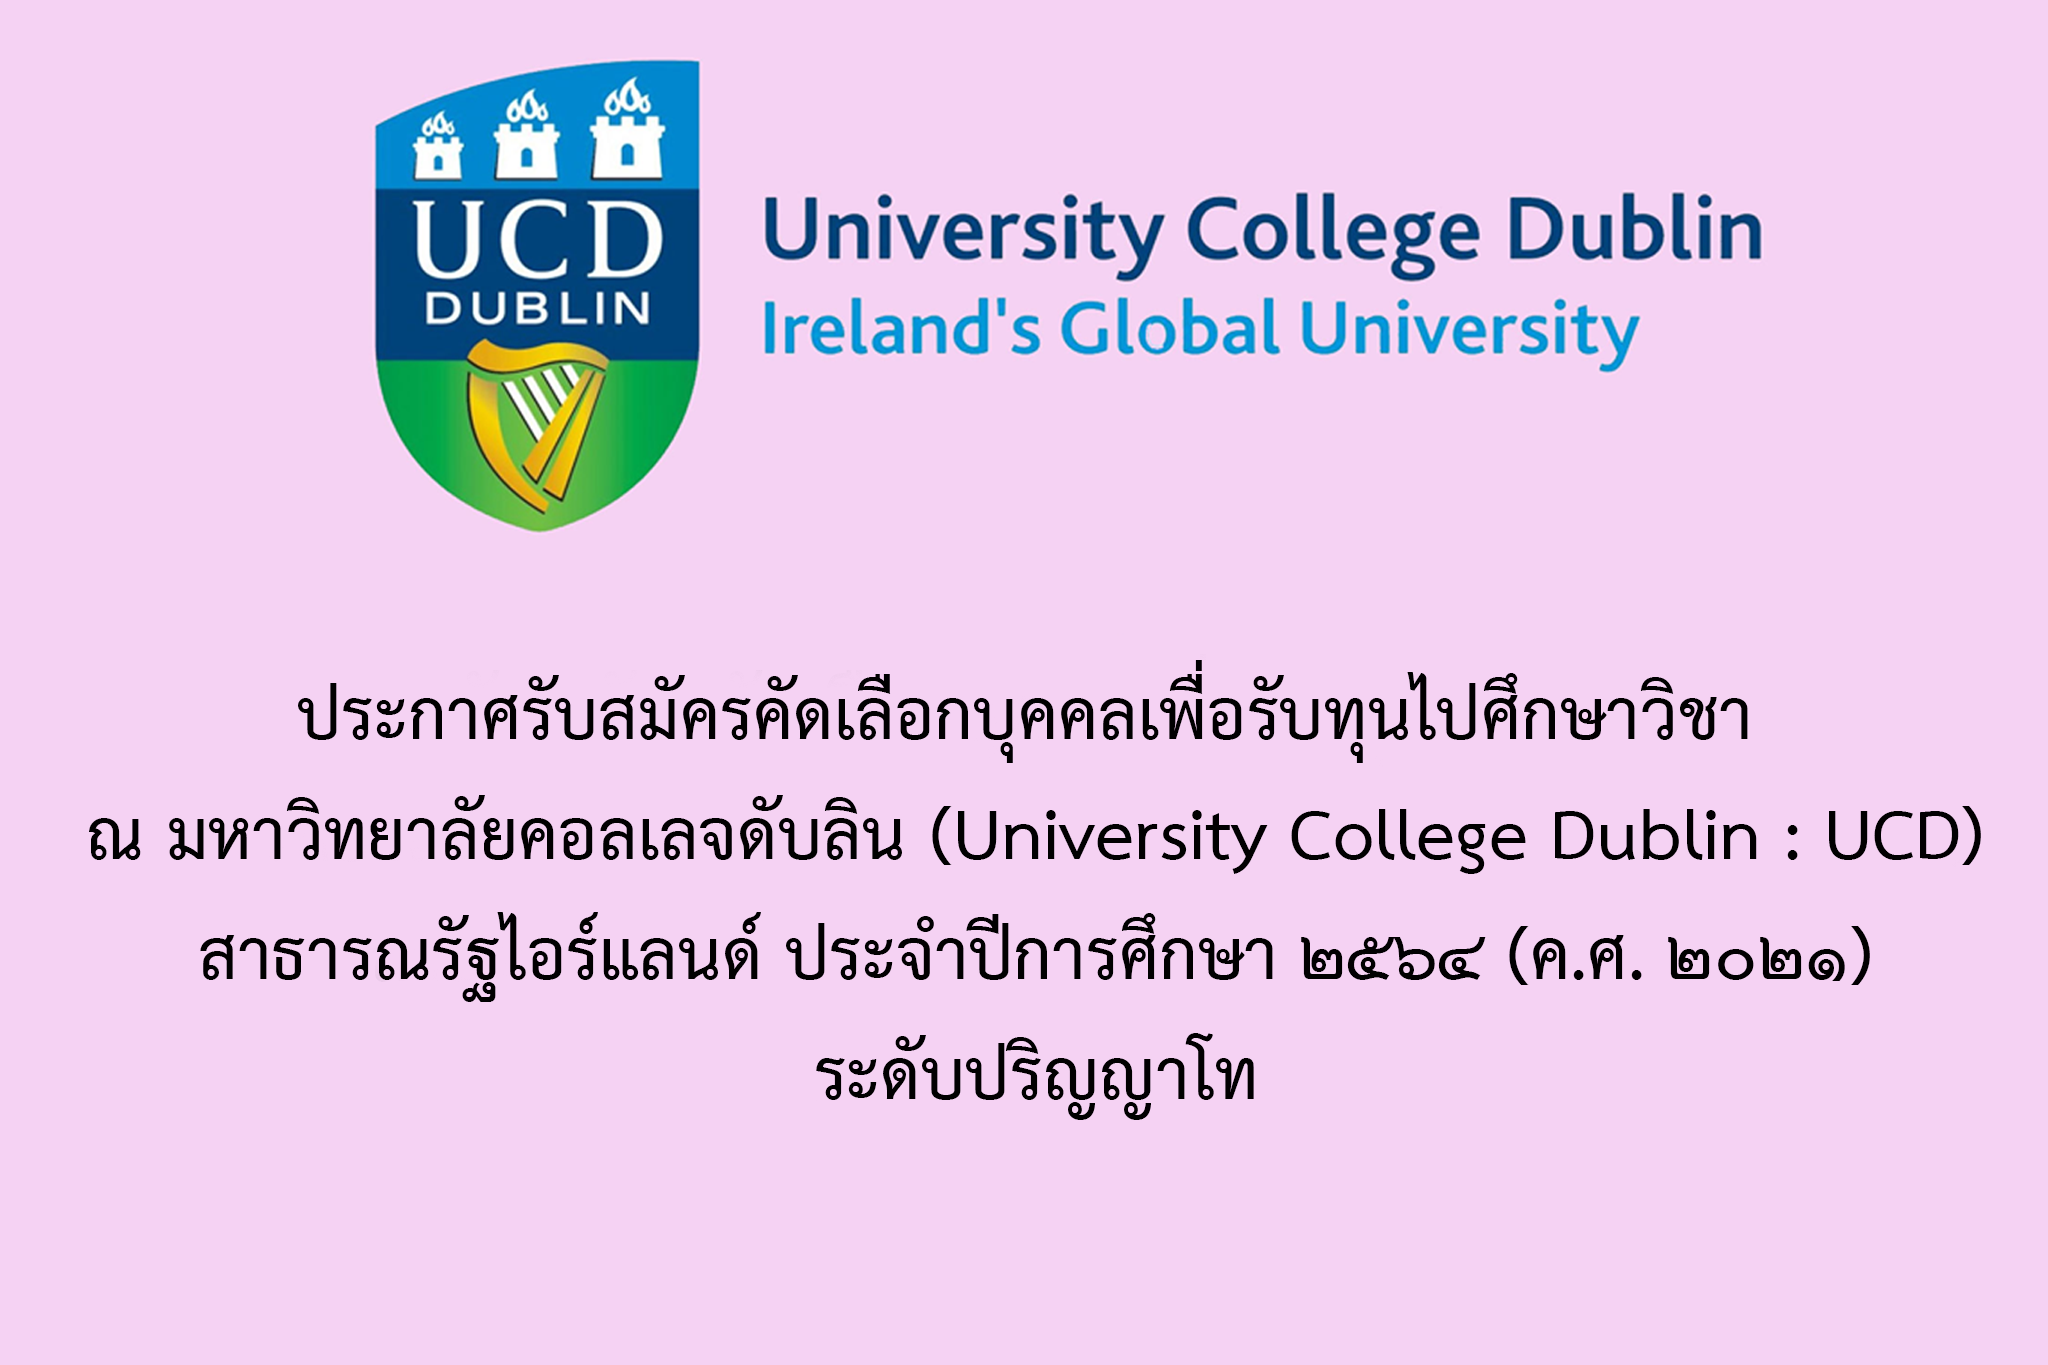 ประกาศรับสมัครคัดเลือกบุคคลเพื่อรับทุนไปศึกษาวิชา ณ มหาวิทยาลัยคอลเลจดับลิน (University College Dublin : UCD) สาธารณรัฐไอร์แลนด์ ประจำปีการศึกษา ๒๕๖๔ (ค.ศ. ๒๐๒๑) ระดับปริญญาโท